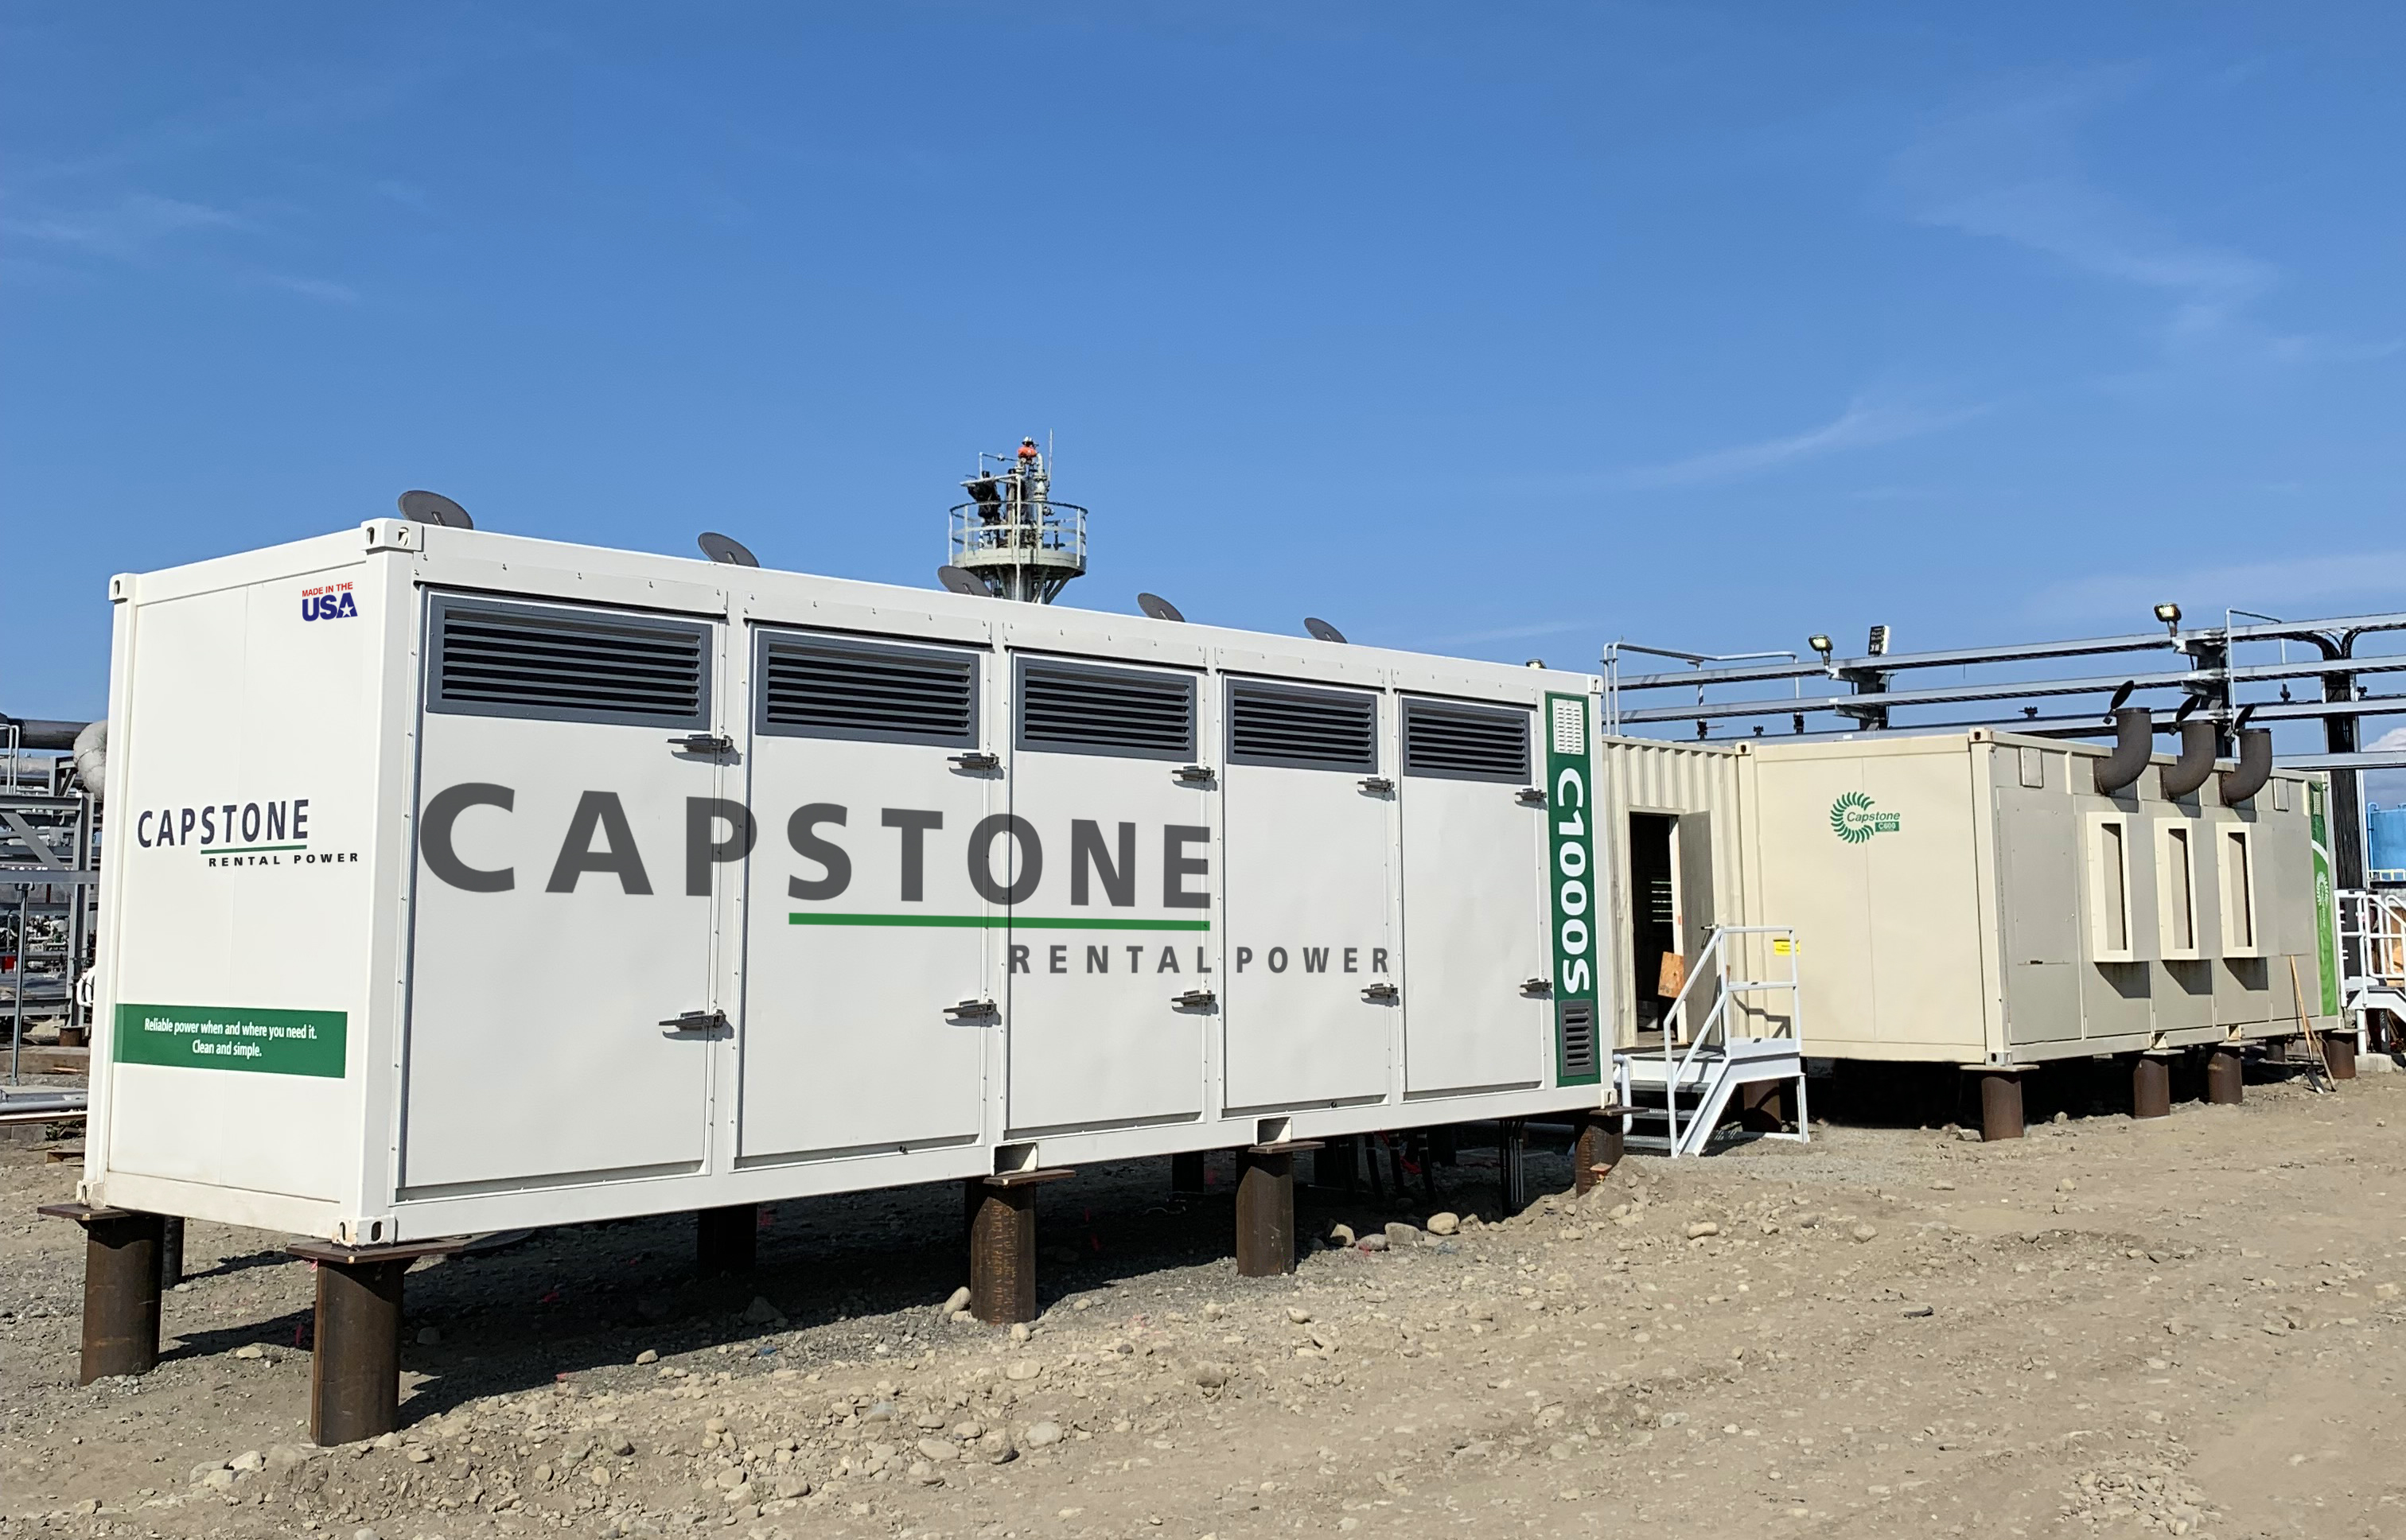 Capstone Turbine Corporation, Monday, March 8, 2021, Press release picture